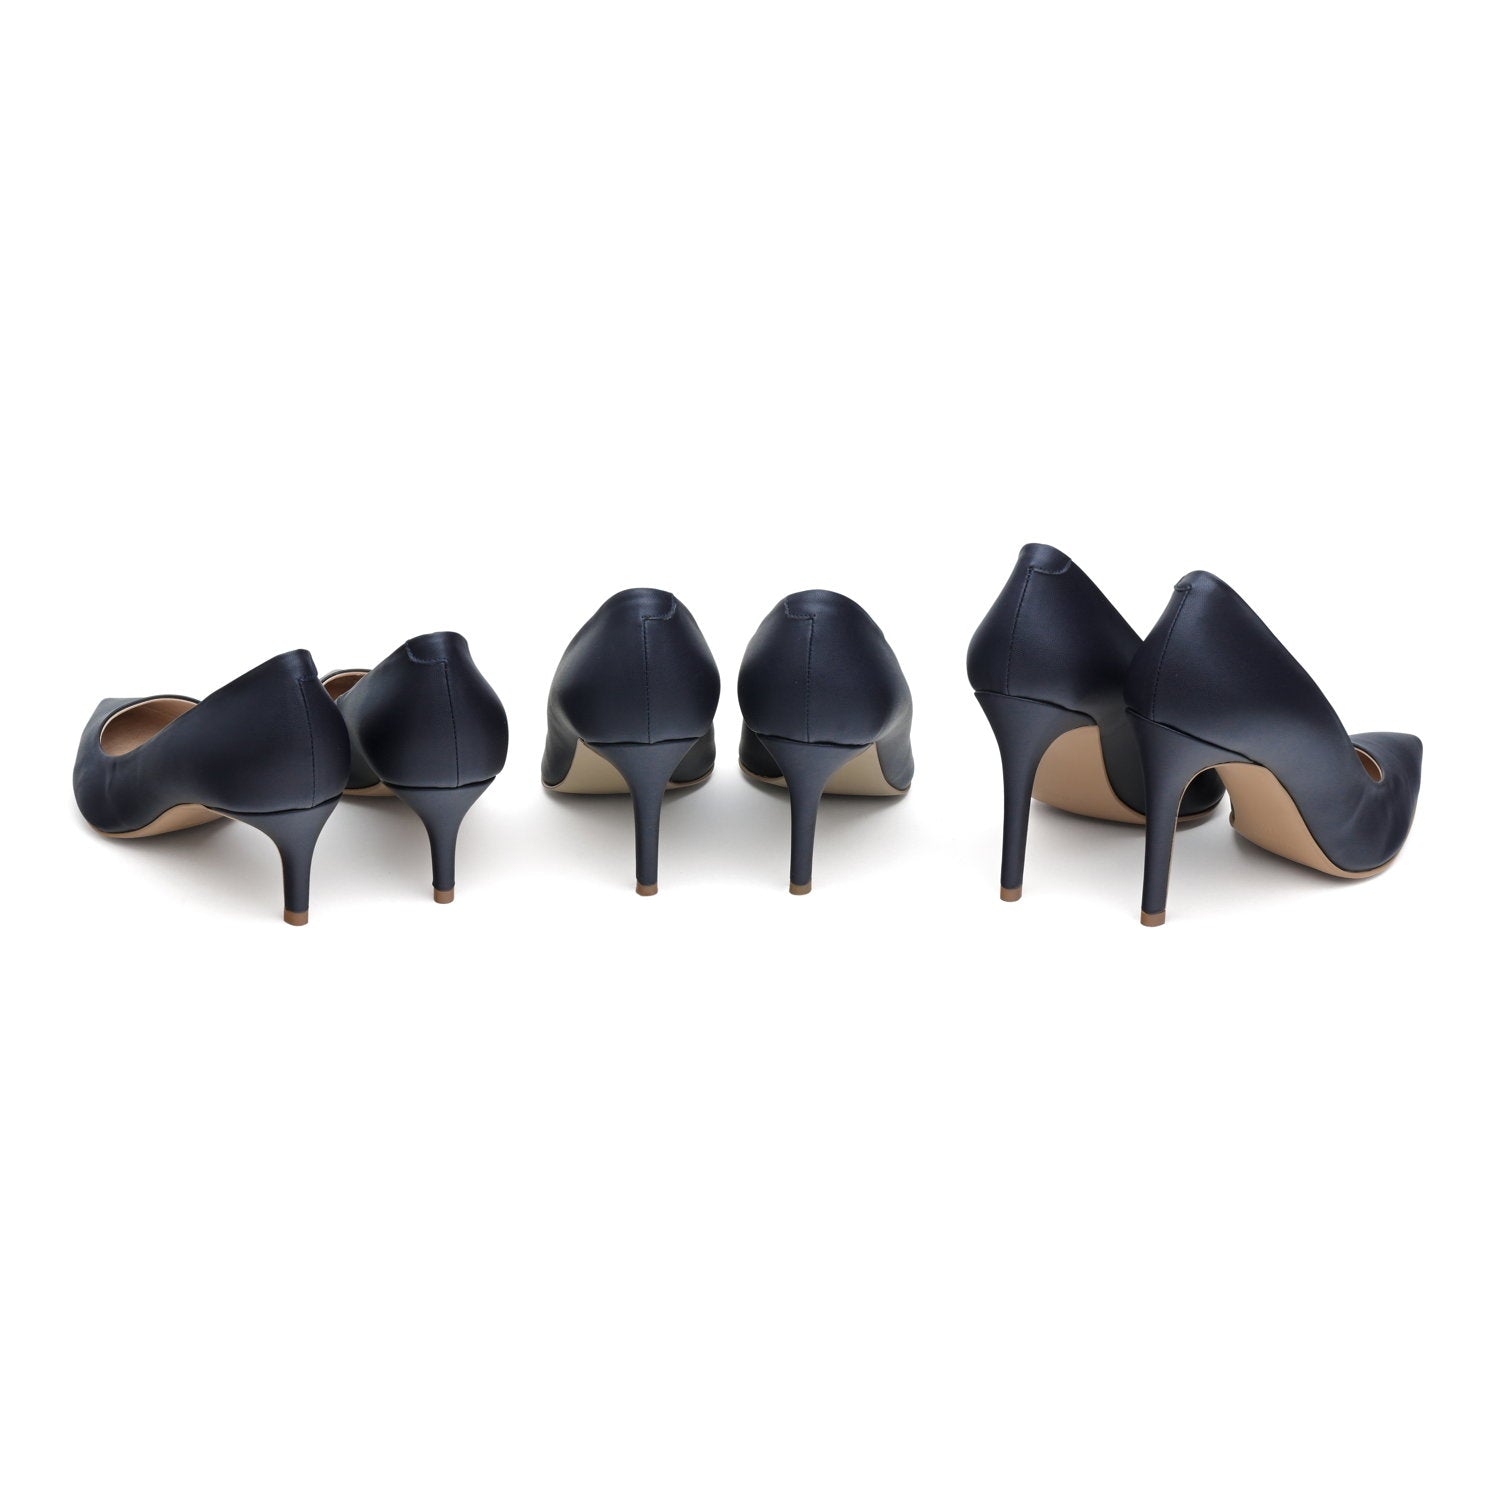 The Blue - vegan 50mm heels